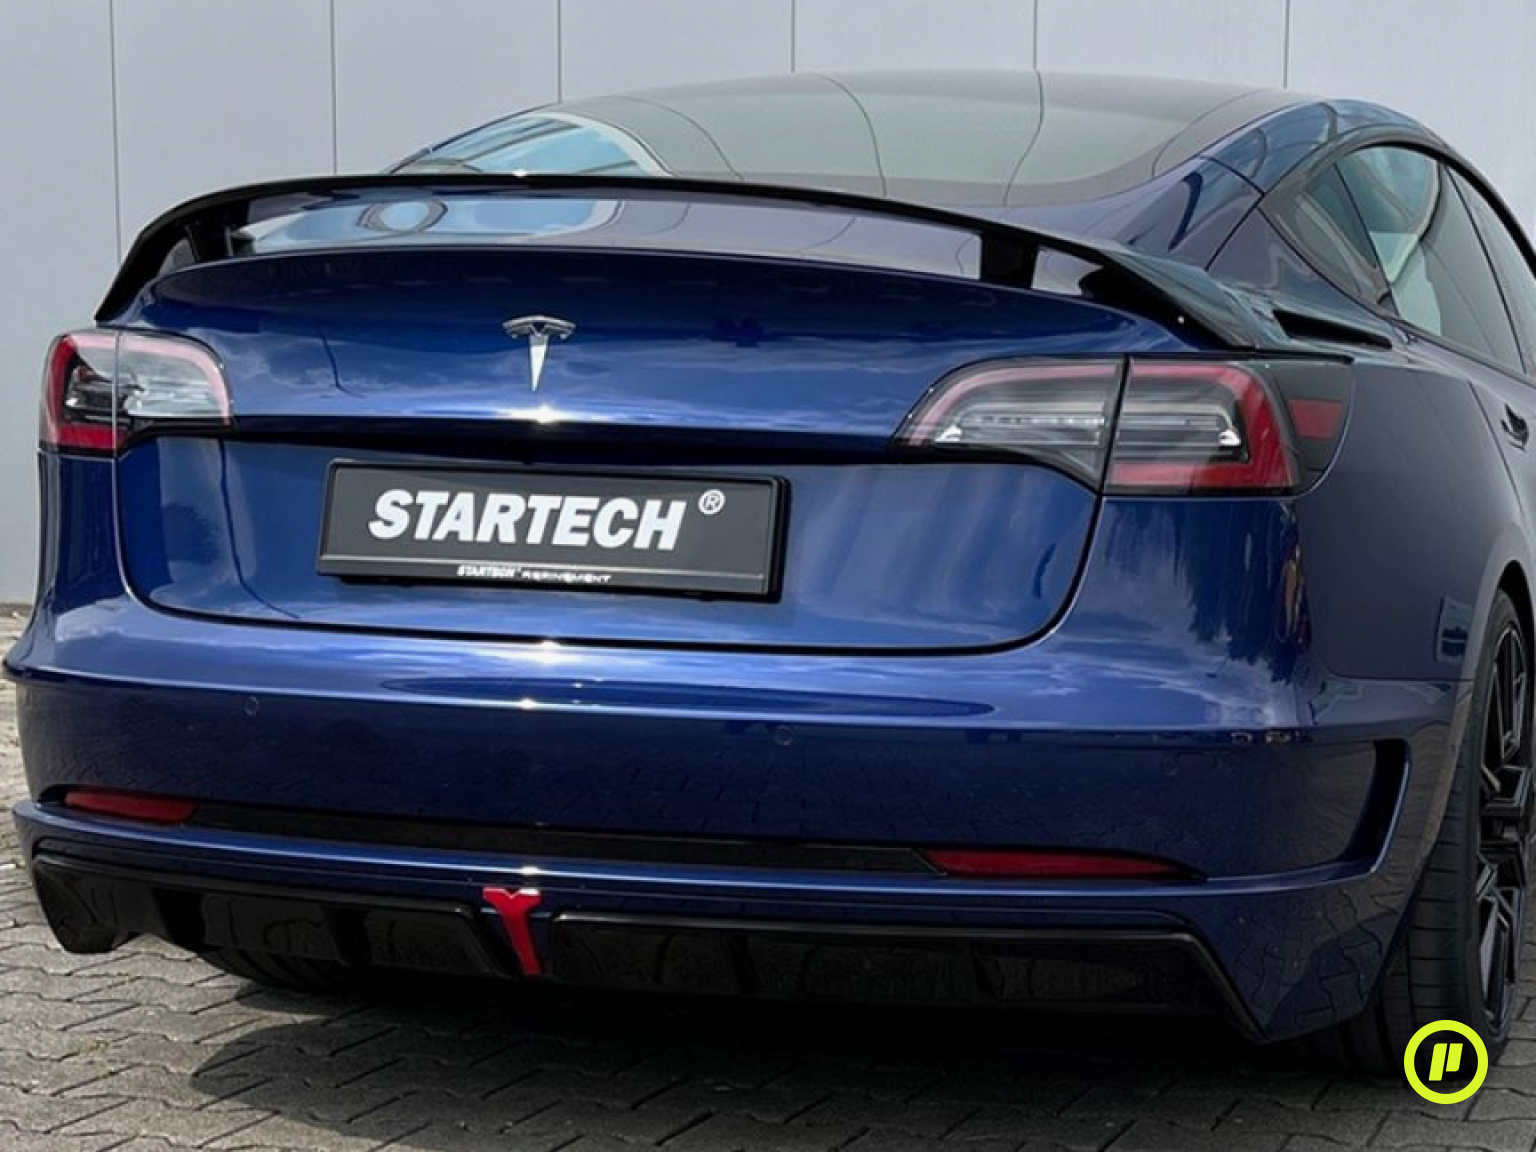 Startech Rear Bumper for Tesla Model 3 (2017+)